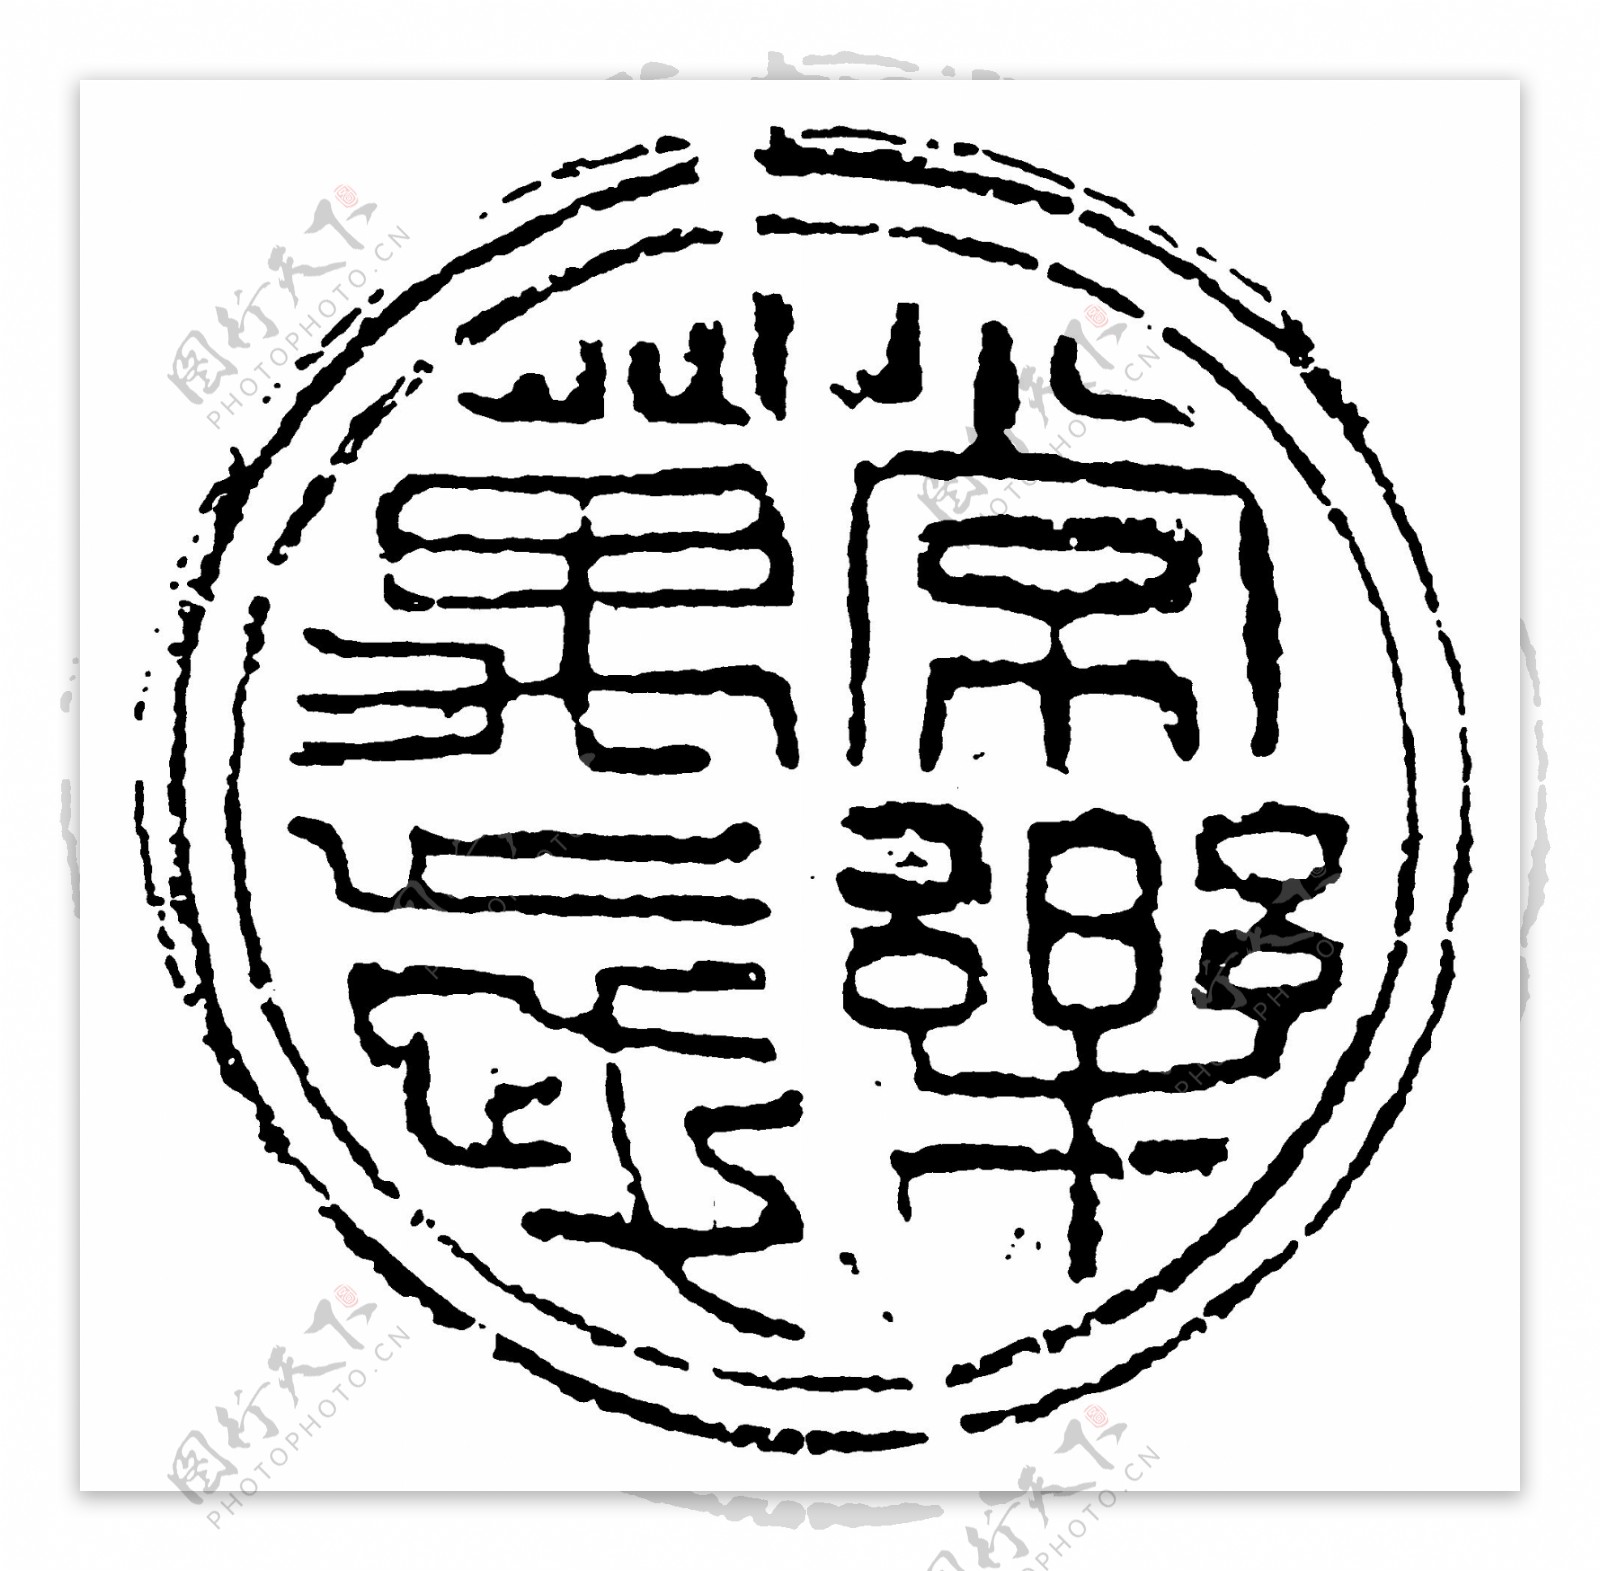 瓦当图案秦汉时期图案中国传统图案图案147